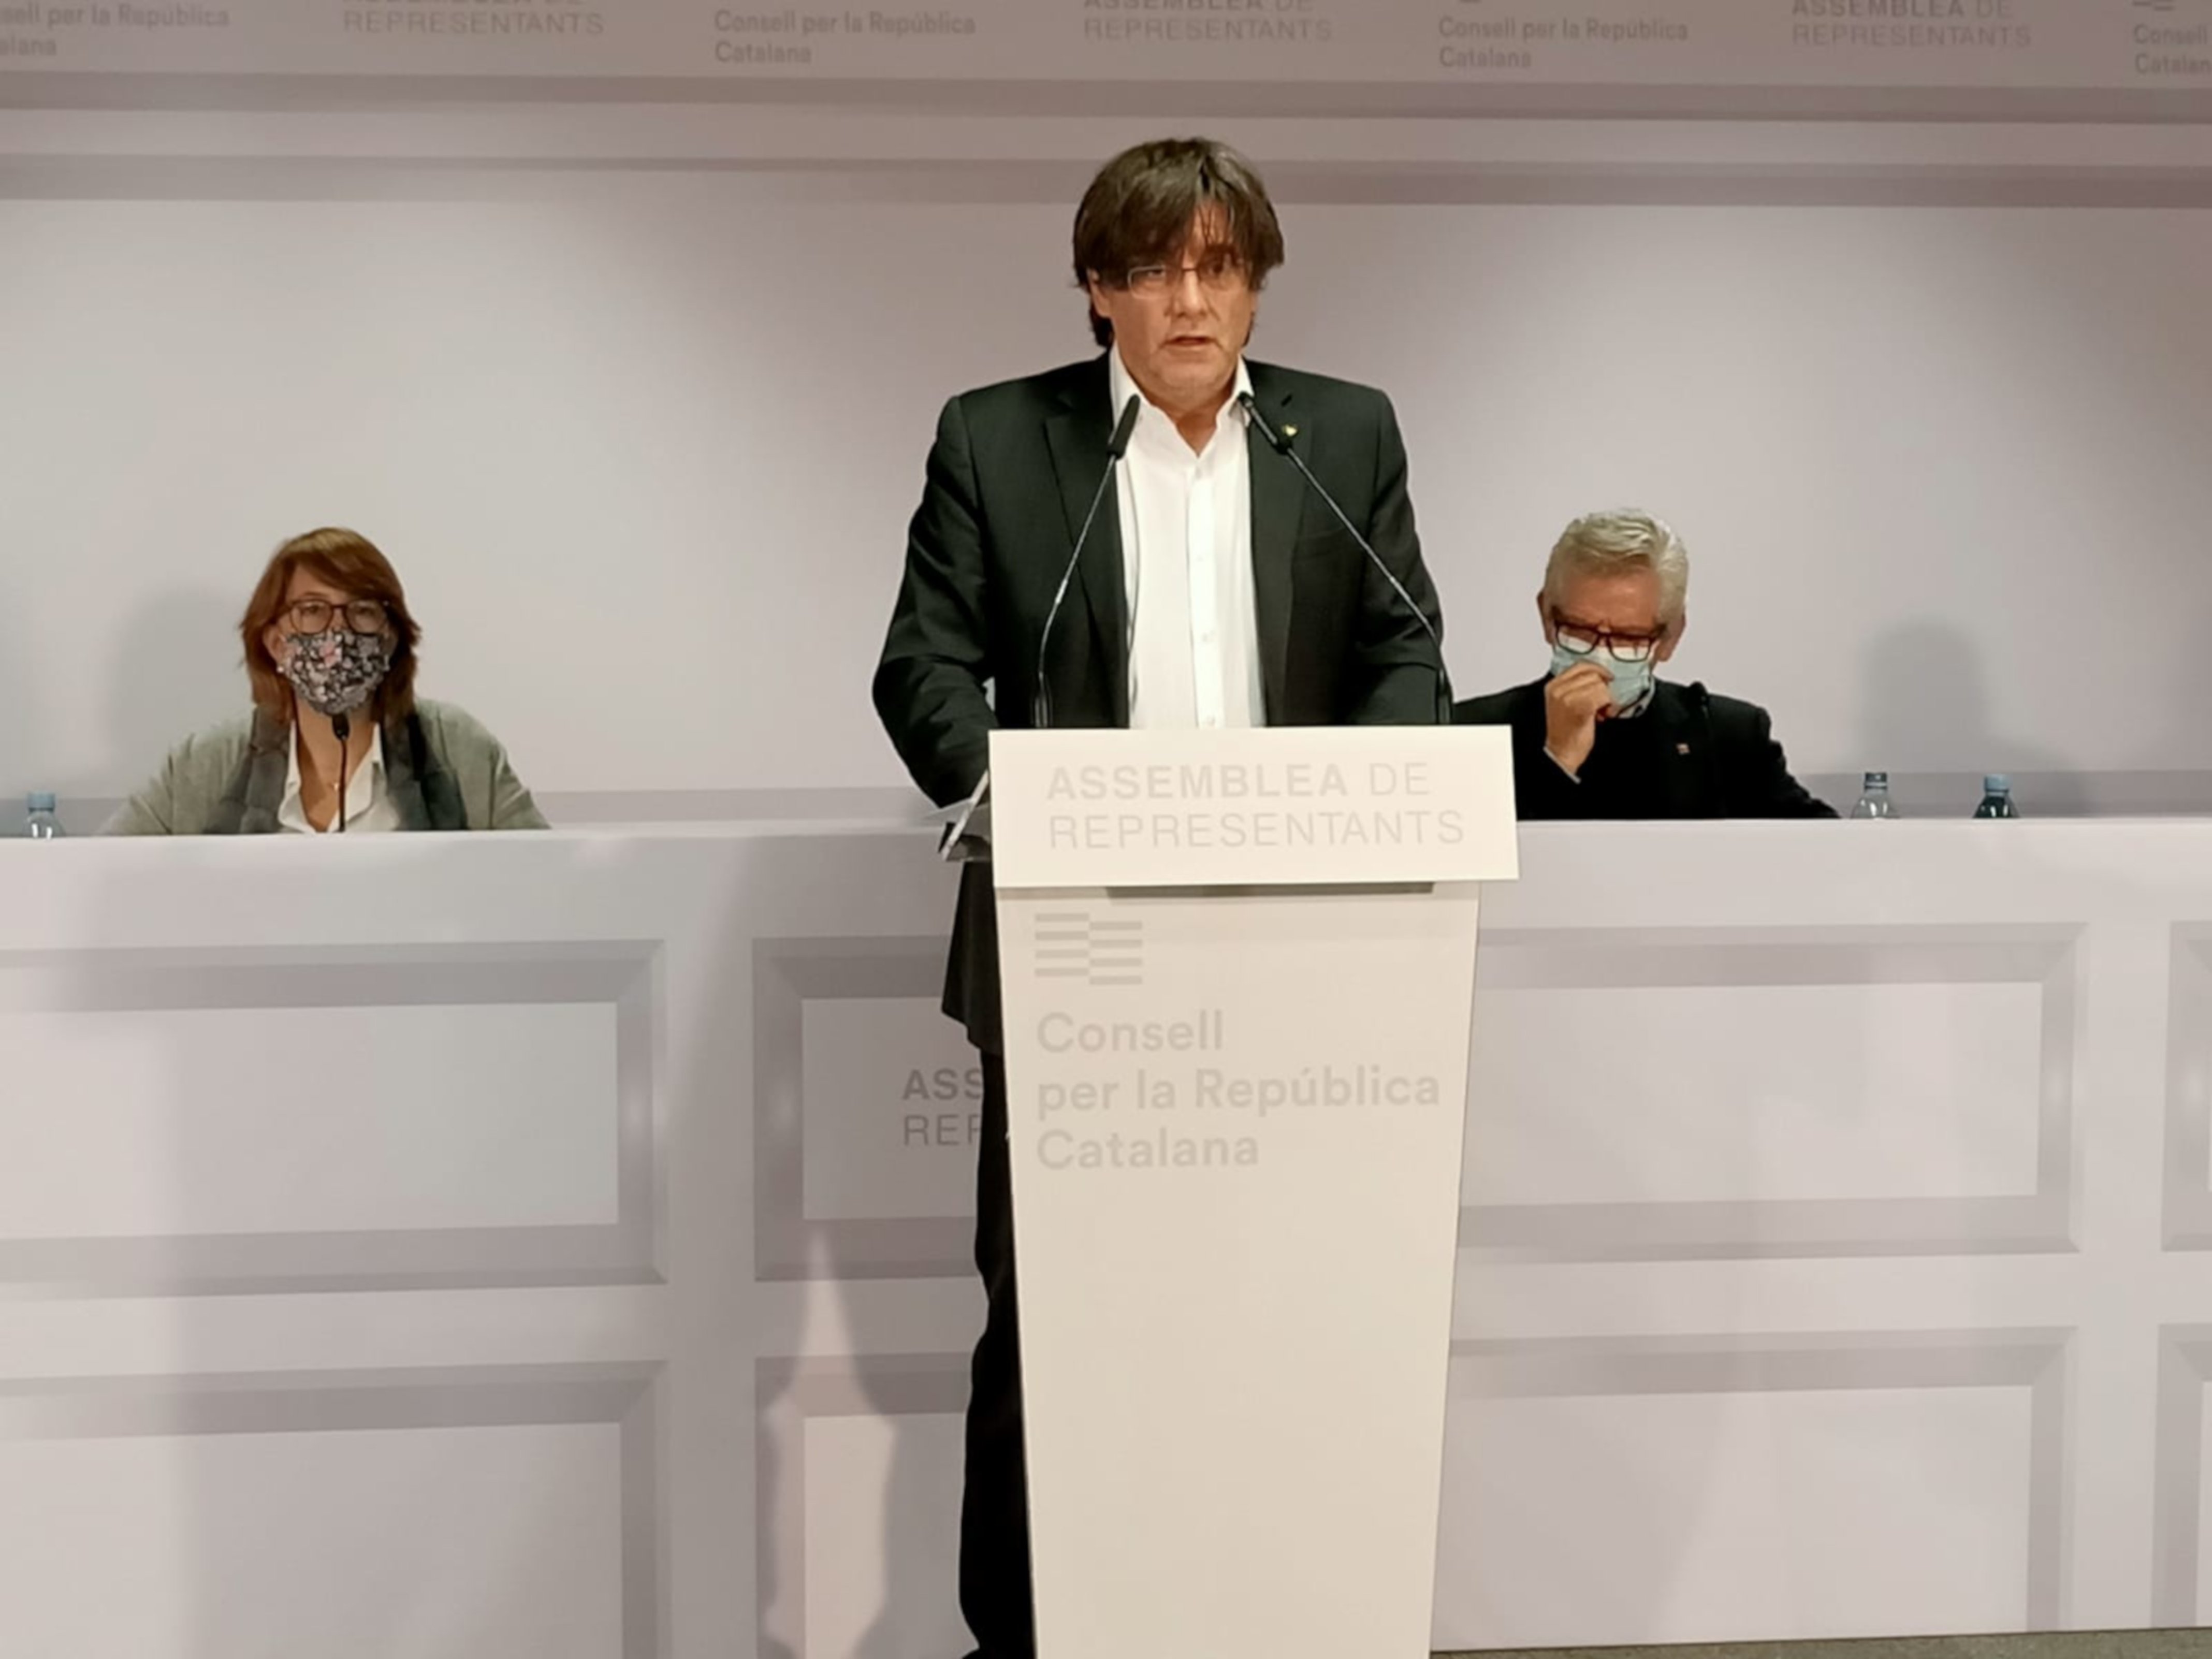 El TC rebutja un recurs contra la suspensió de Puigdemont com a diputat